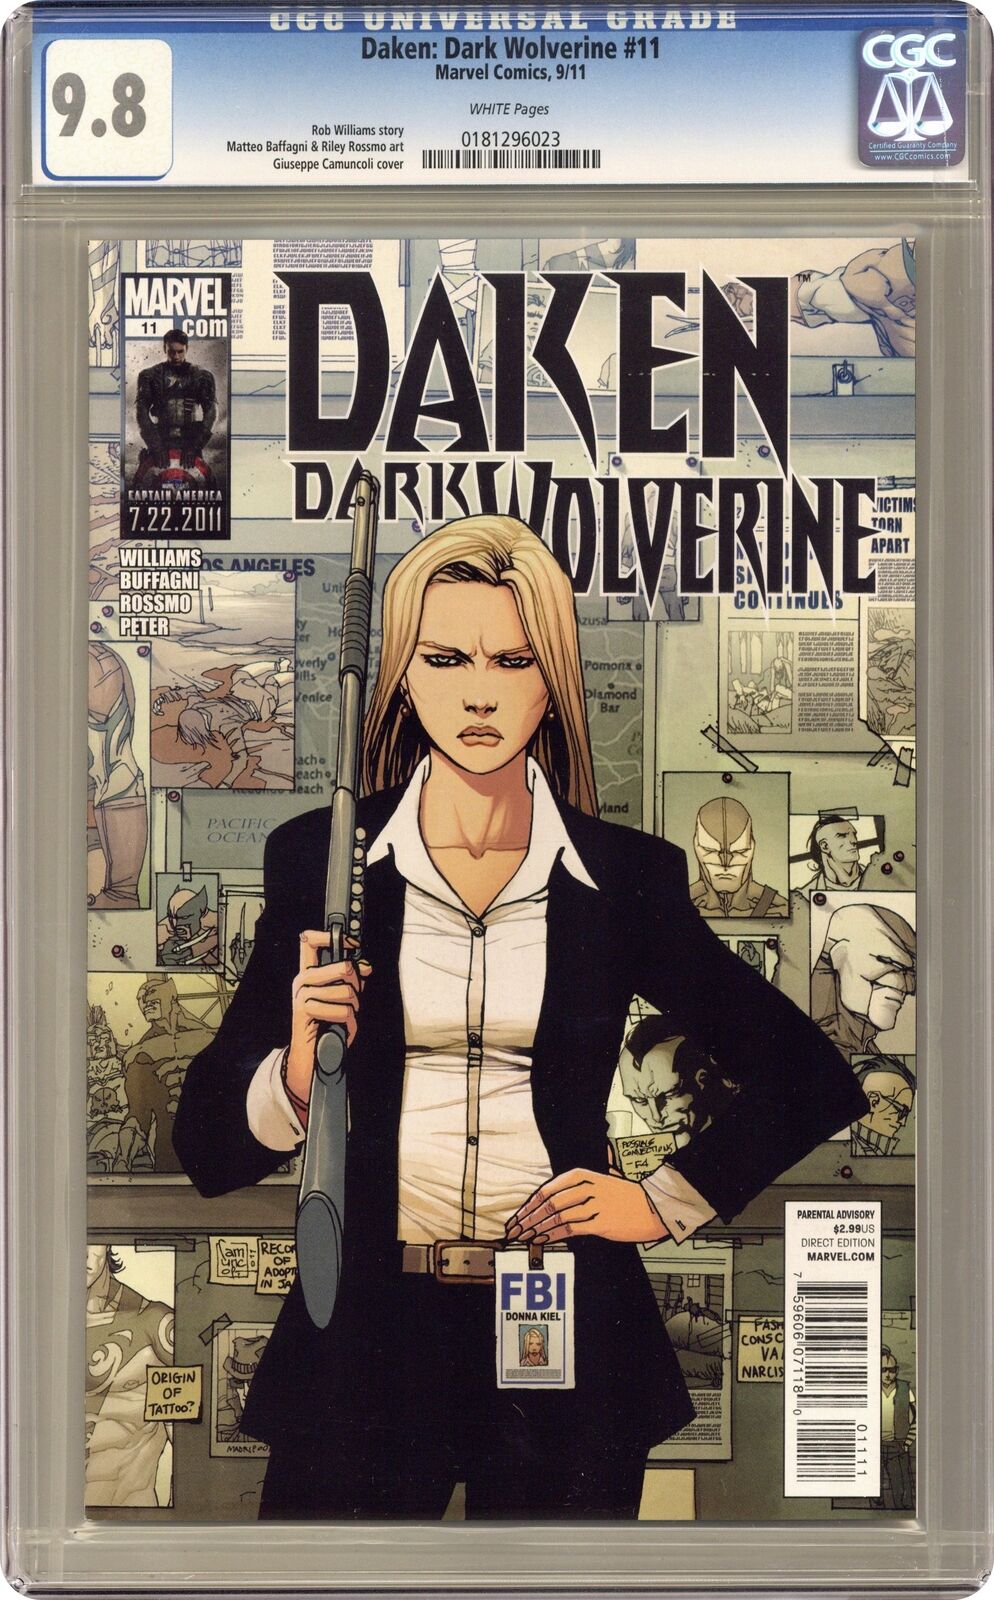 Daken Dark Wolverine #11 CGC 9.8 2011 0181296023